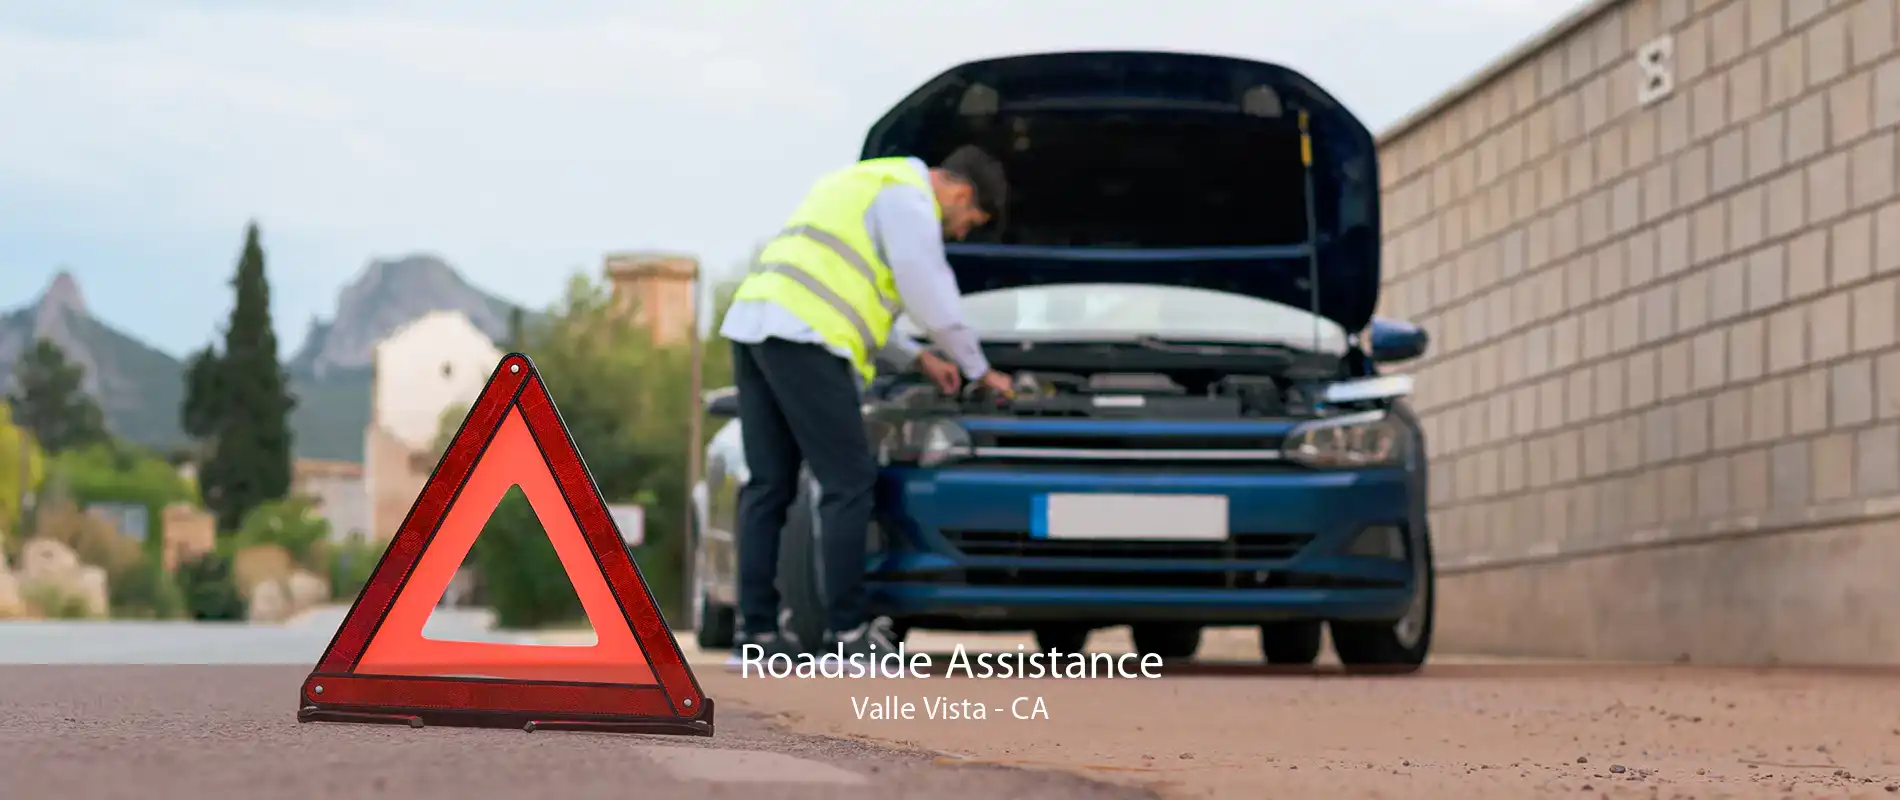 Roadside Assistance Valle Vista - CA